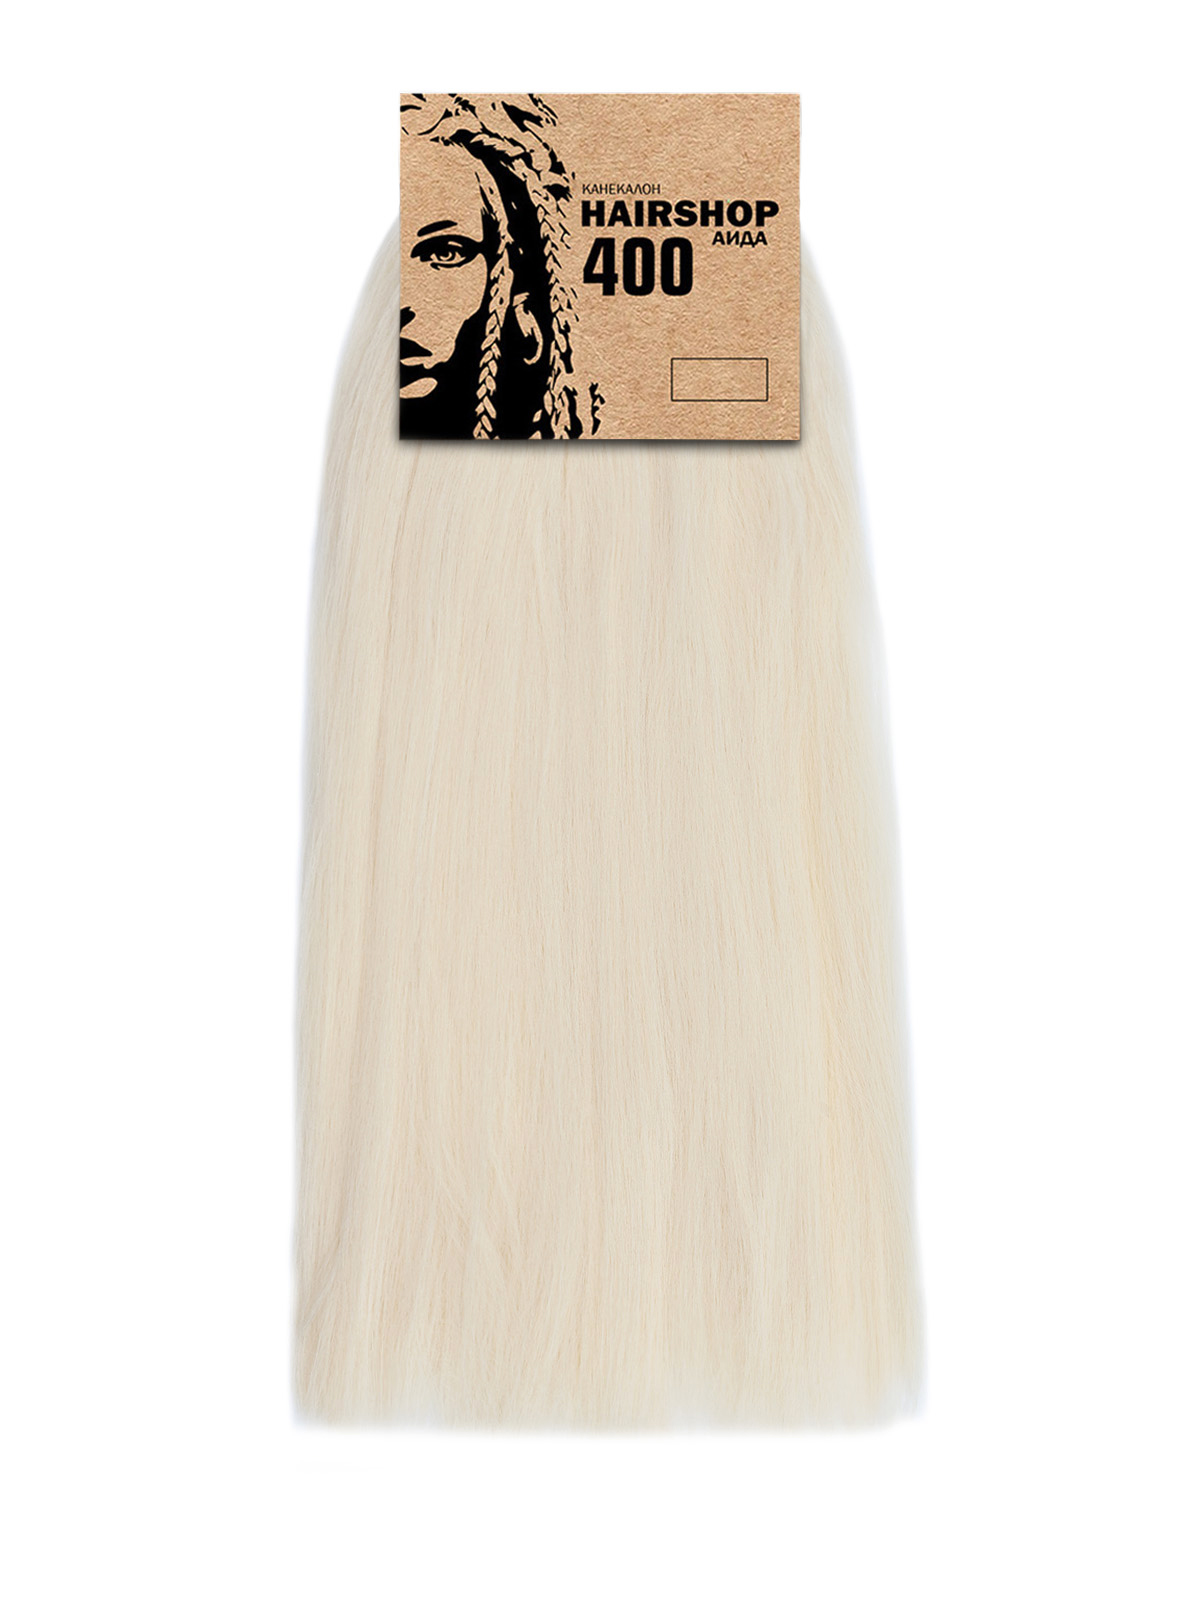 Канекалон Hairshop Аида 400г цвет 303 Светлый блонд канекалон hairshop аида f13 зеленый 400г